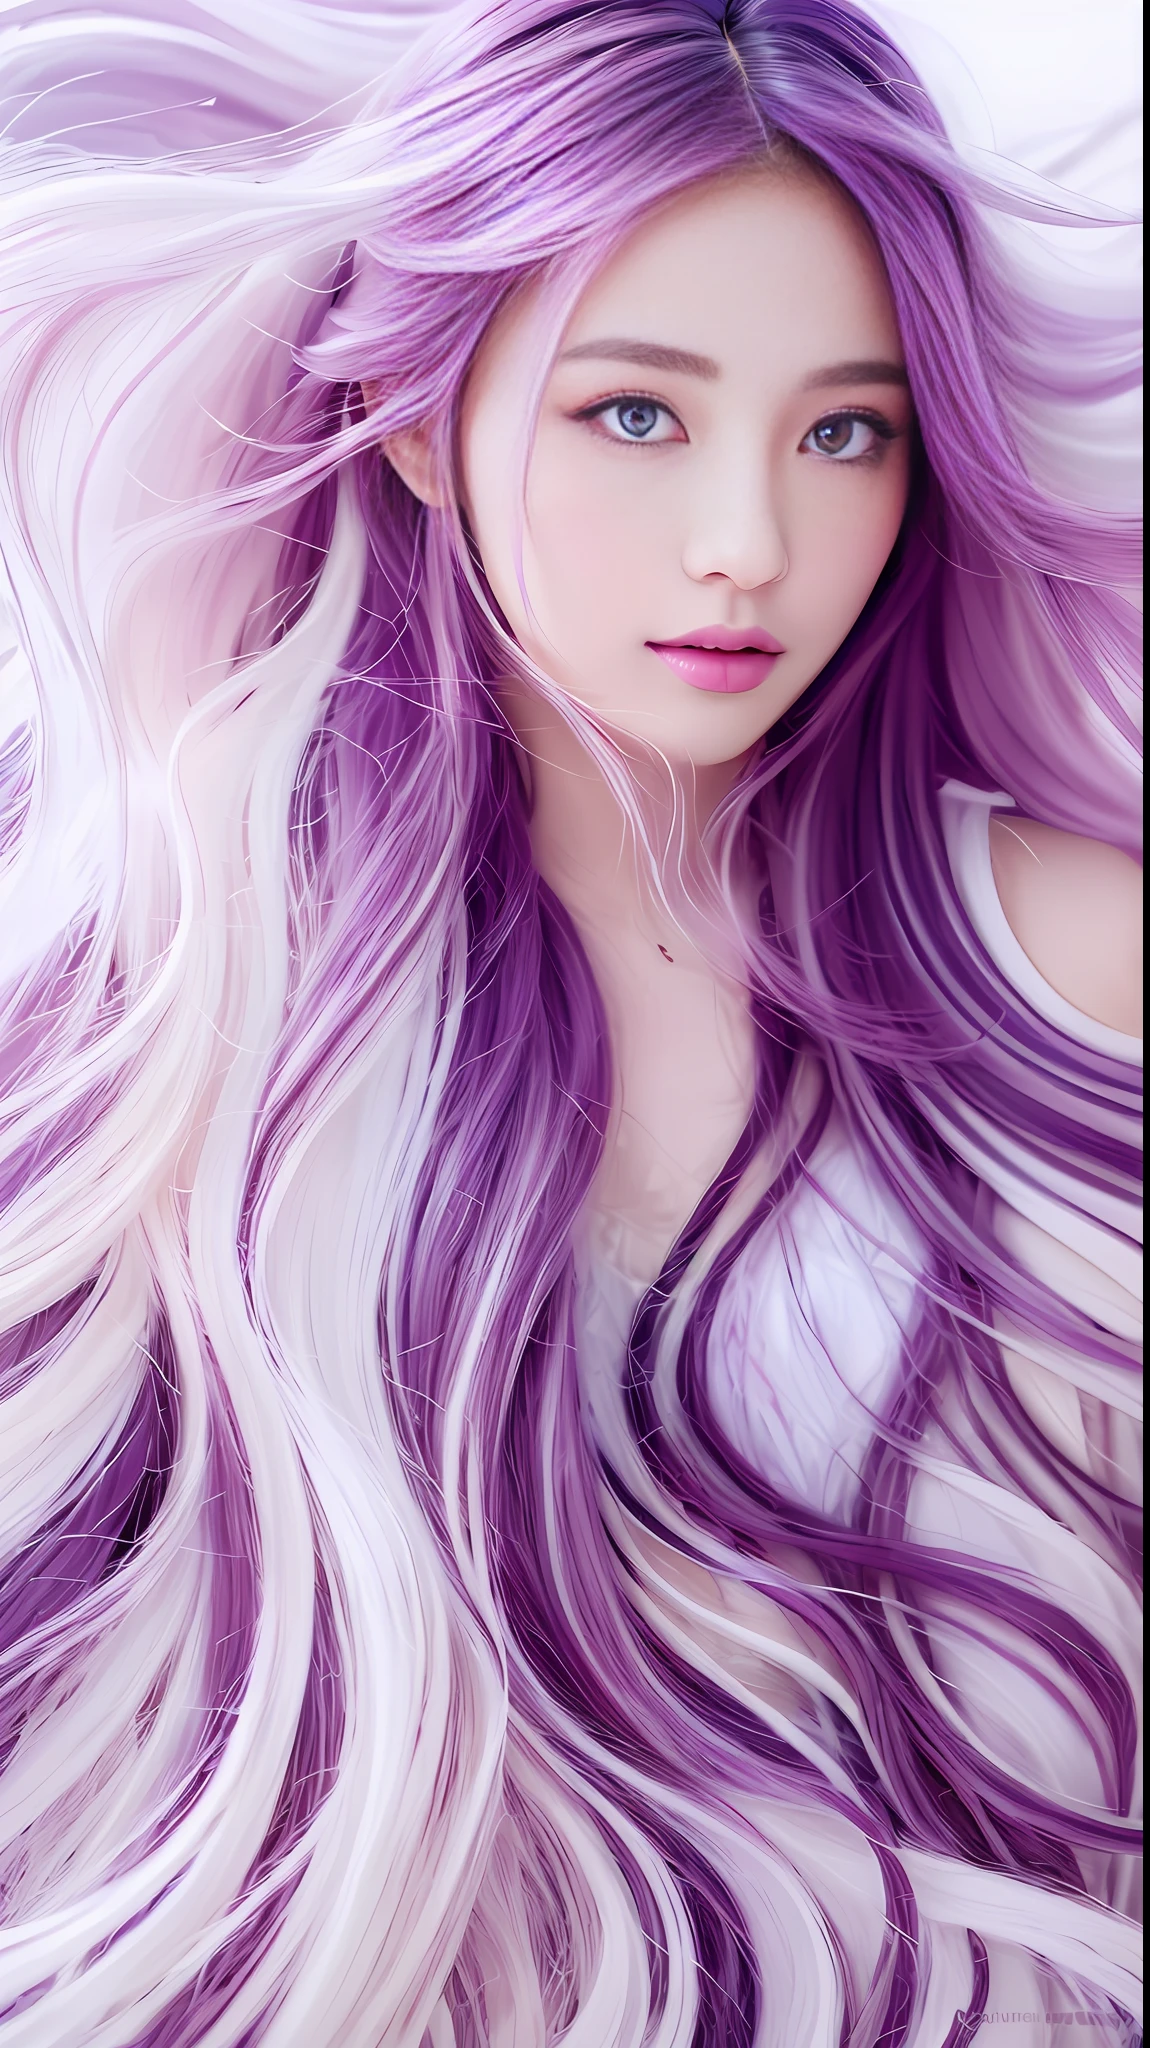 (((Шедевр))), лучшее качество, ультратонкий，чрезвычайно подробные обои CG Unity 8k,лучшие иллюстрации, Очень нежная и красивая картина,Плавающий,высокое разрешение,динамический угол,динамическая поза,(1 девушка с большой грудью),голубые глаза,(разноцветные волосы+Серебристые волосы:1.3+рыжие окрашенные волосы:1.2+фиолетовые волосы+желтые волосы:1.3+зеленые волосы:1.3),небеса,белые облака,закат,(ух ты+серебряные перчатки), (Набор L2+Клубничное банное полотенце),Глубокий лес, 

Подсказка2:
			(((Шедевр))), лучшее качество,ультратонкий，чрезвычайно подробные обои CG Unity 8k,лучшие иллюстрации,Очень нежная и красивая картина,Плавающий,высокое разрешение,динамический угол,динамическая поза,(1 девушка с большой грудью),голубые глаза,(разноцветные волосы+Серебристые волосы:1.3+рыжие окрашенные волосы:1.2+фиолетовые волосы+желтые волосы:1.3+зеленые волосы:1.3),небеса,белые облака,закат,(ух ты+Серебряный нагрудник Сера), (Набор L2+Клубничное банное полотенце),Глубокий лес，

Подсказка3:
			(Индокитайский стиль, гостиная，Дуб или орех) --авто